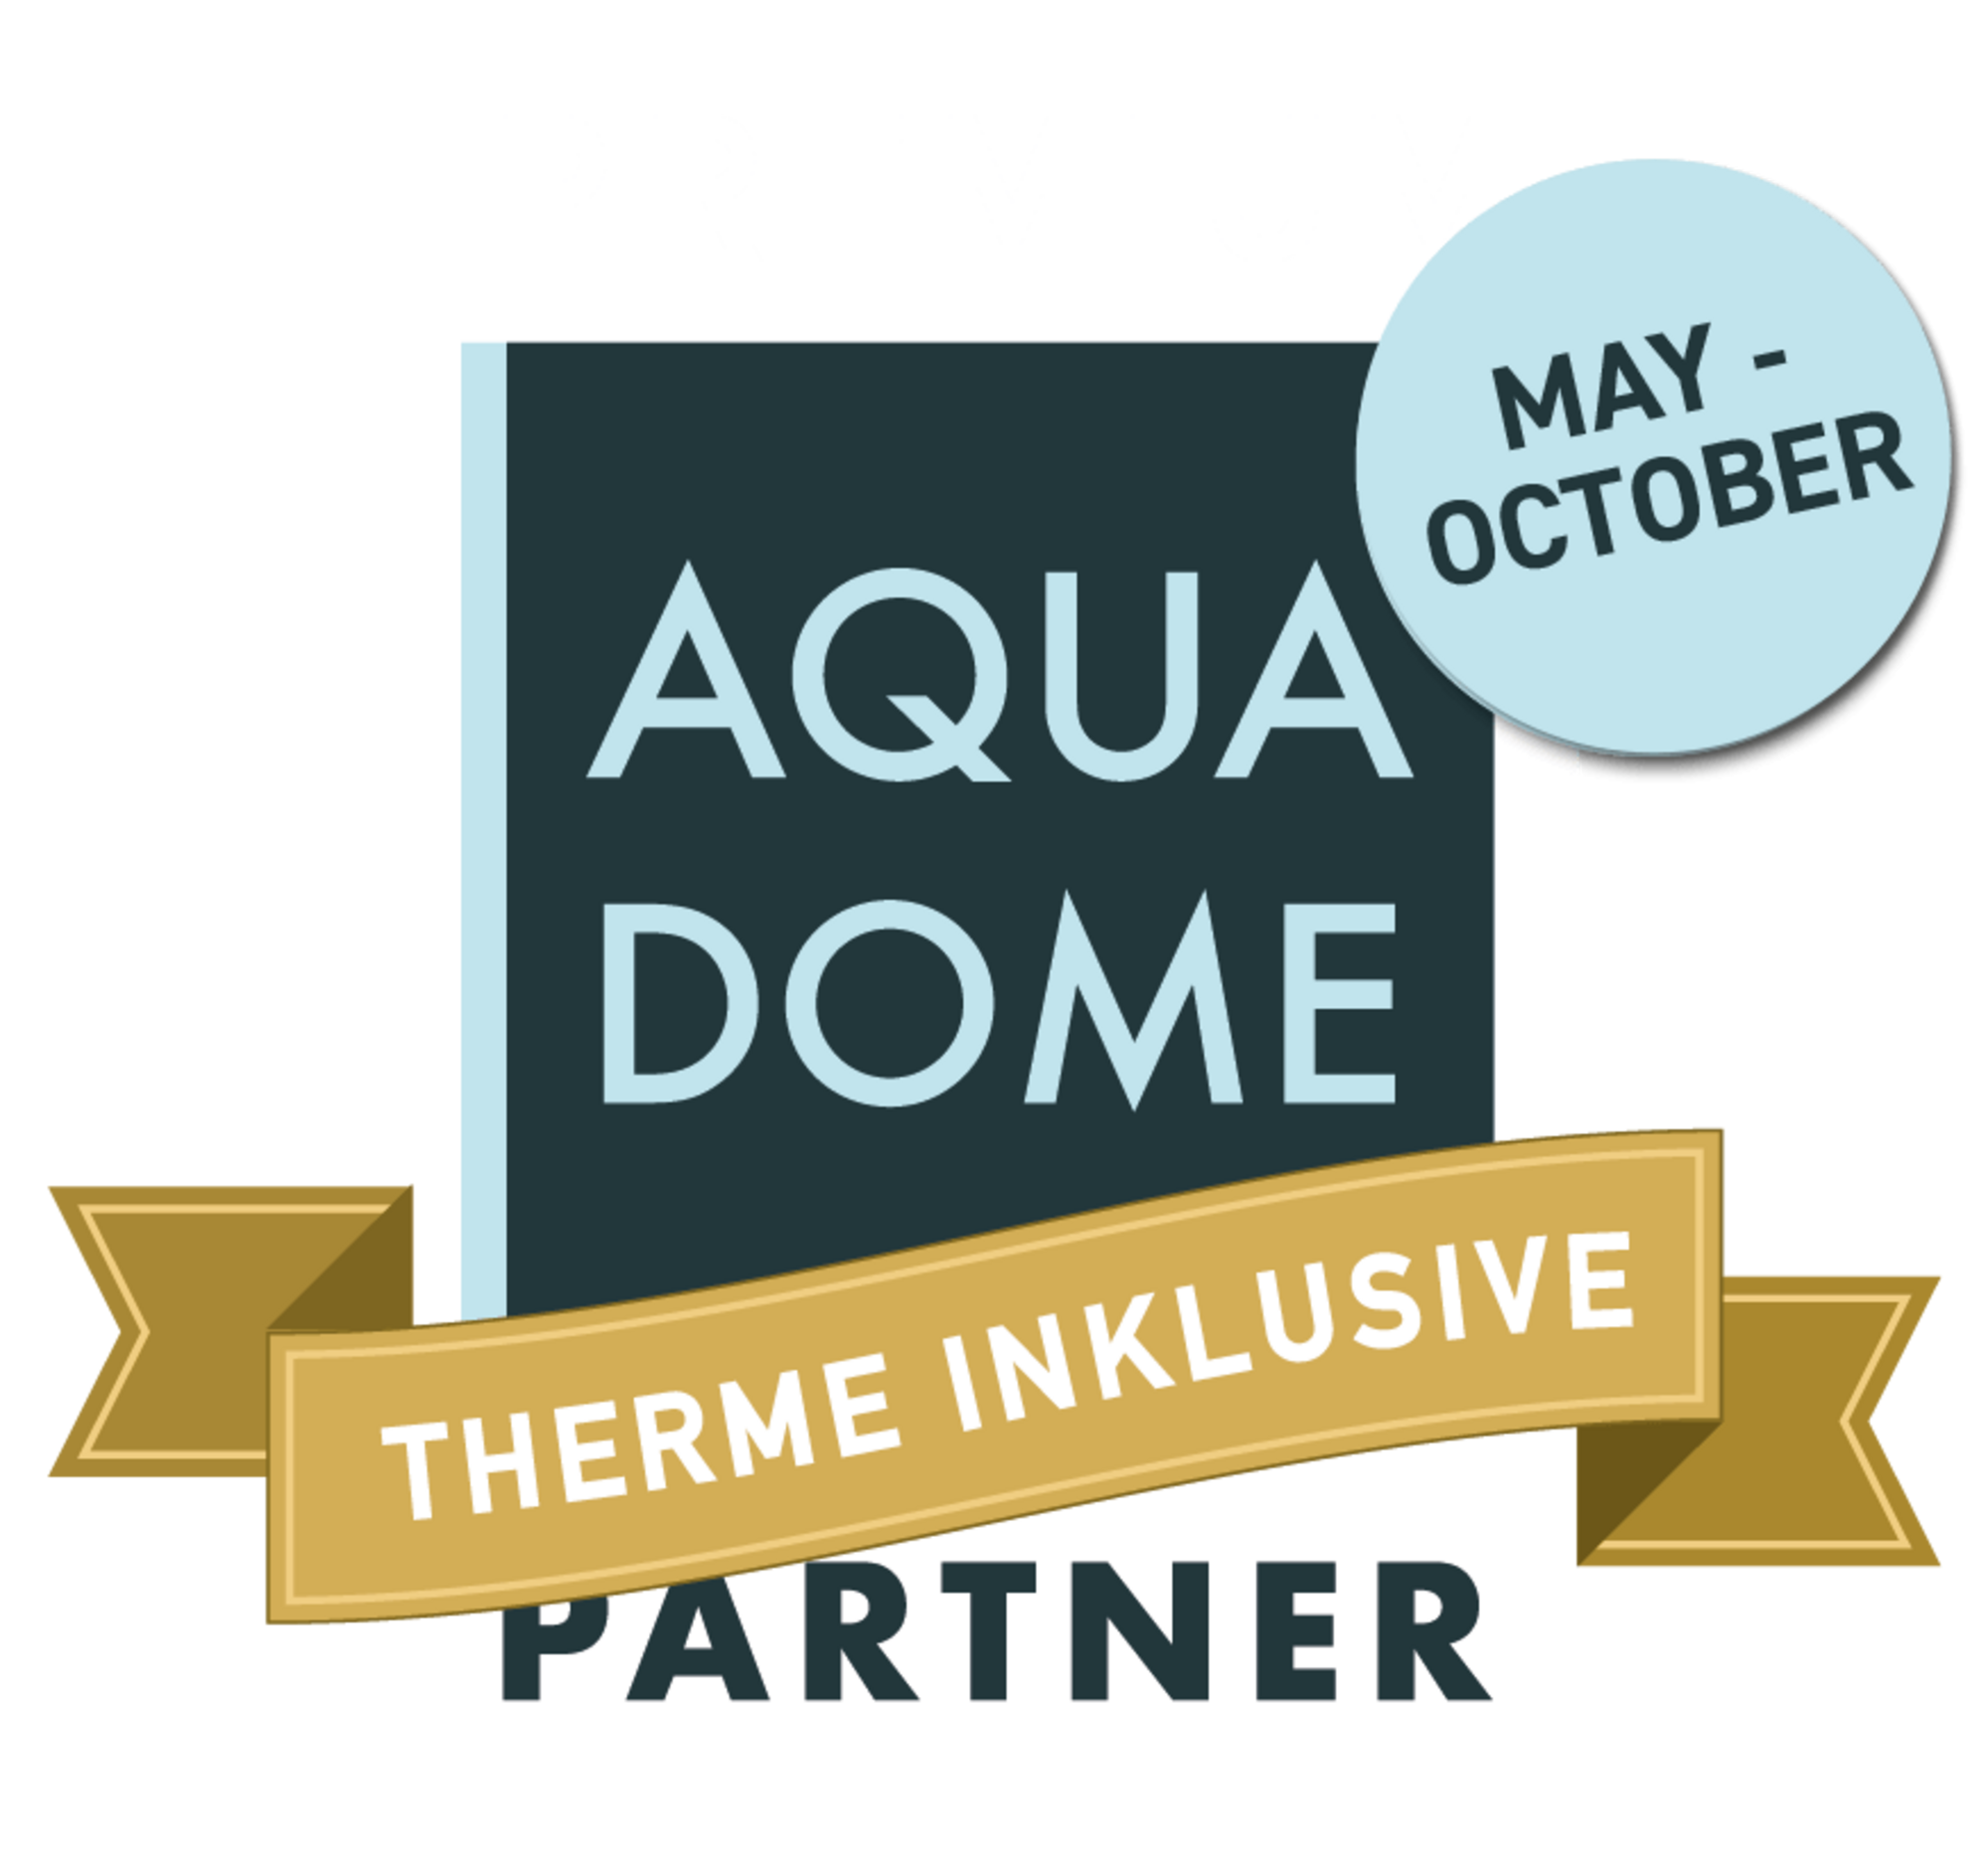 Aqua Dome Premium Partner 2020